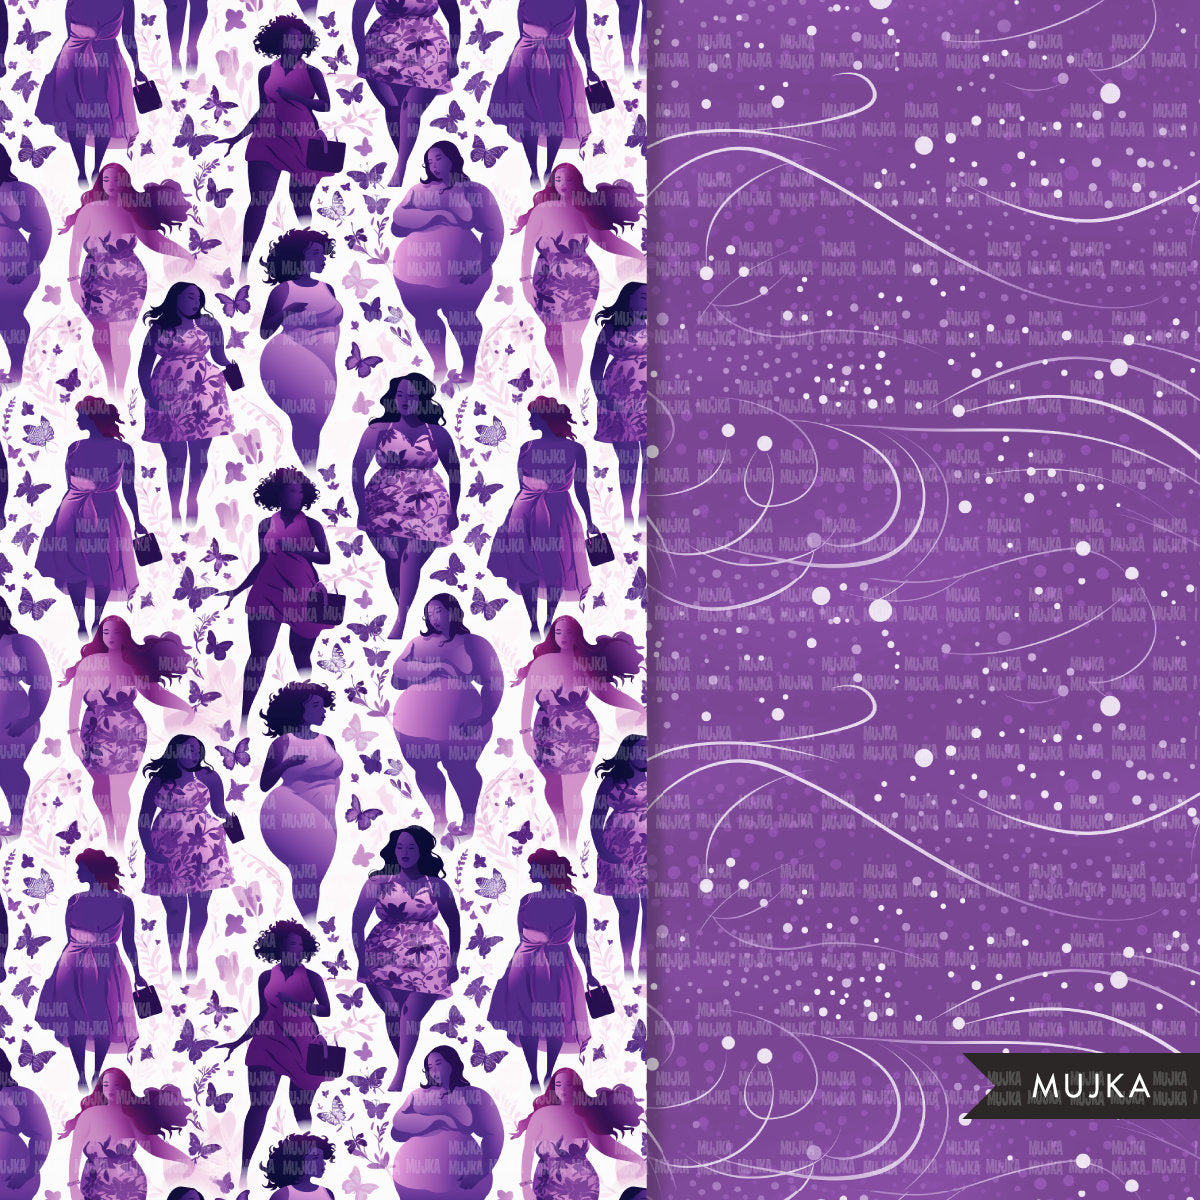 Papeles digitales Lupus Awareness, patrones de conciencia púrpura, papeles de sublimación, flores púrpuras, gráficos de cinta de sobreviviente, sublimación, mujeres